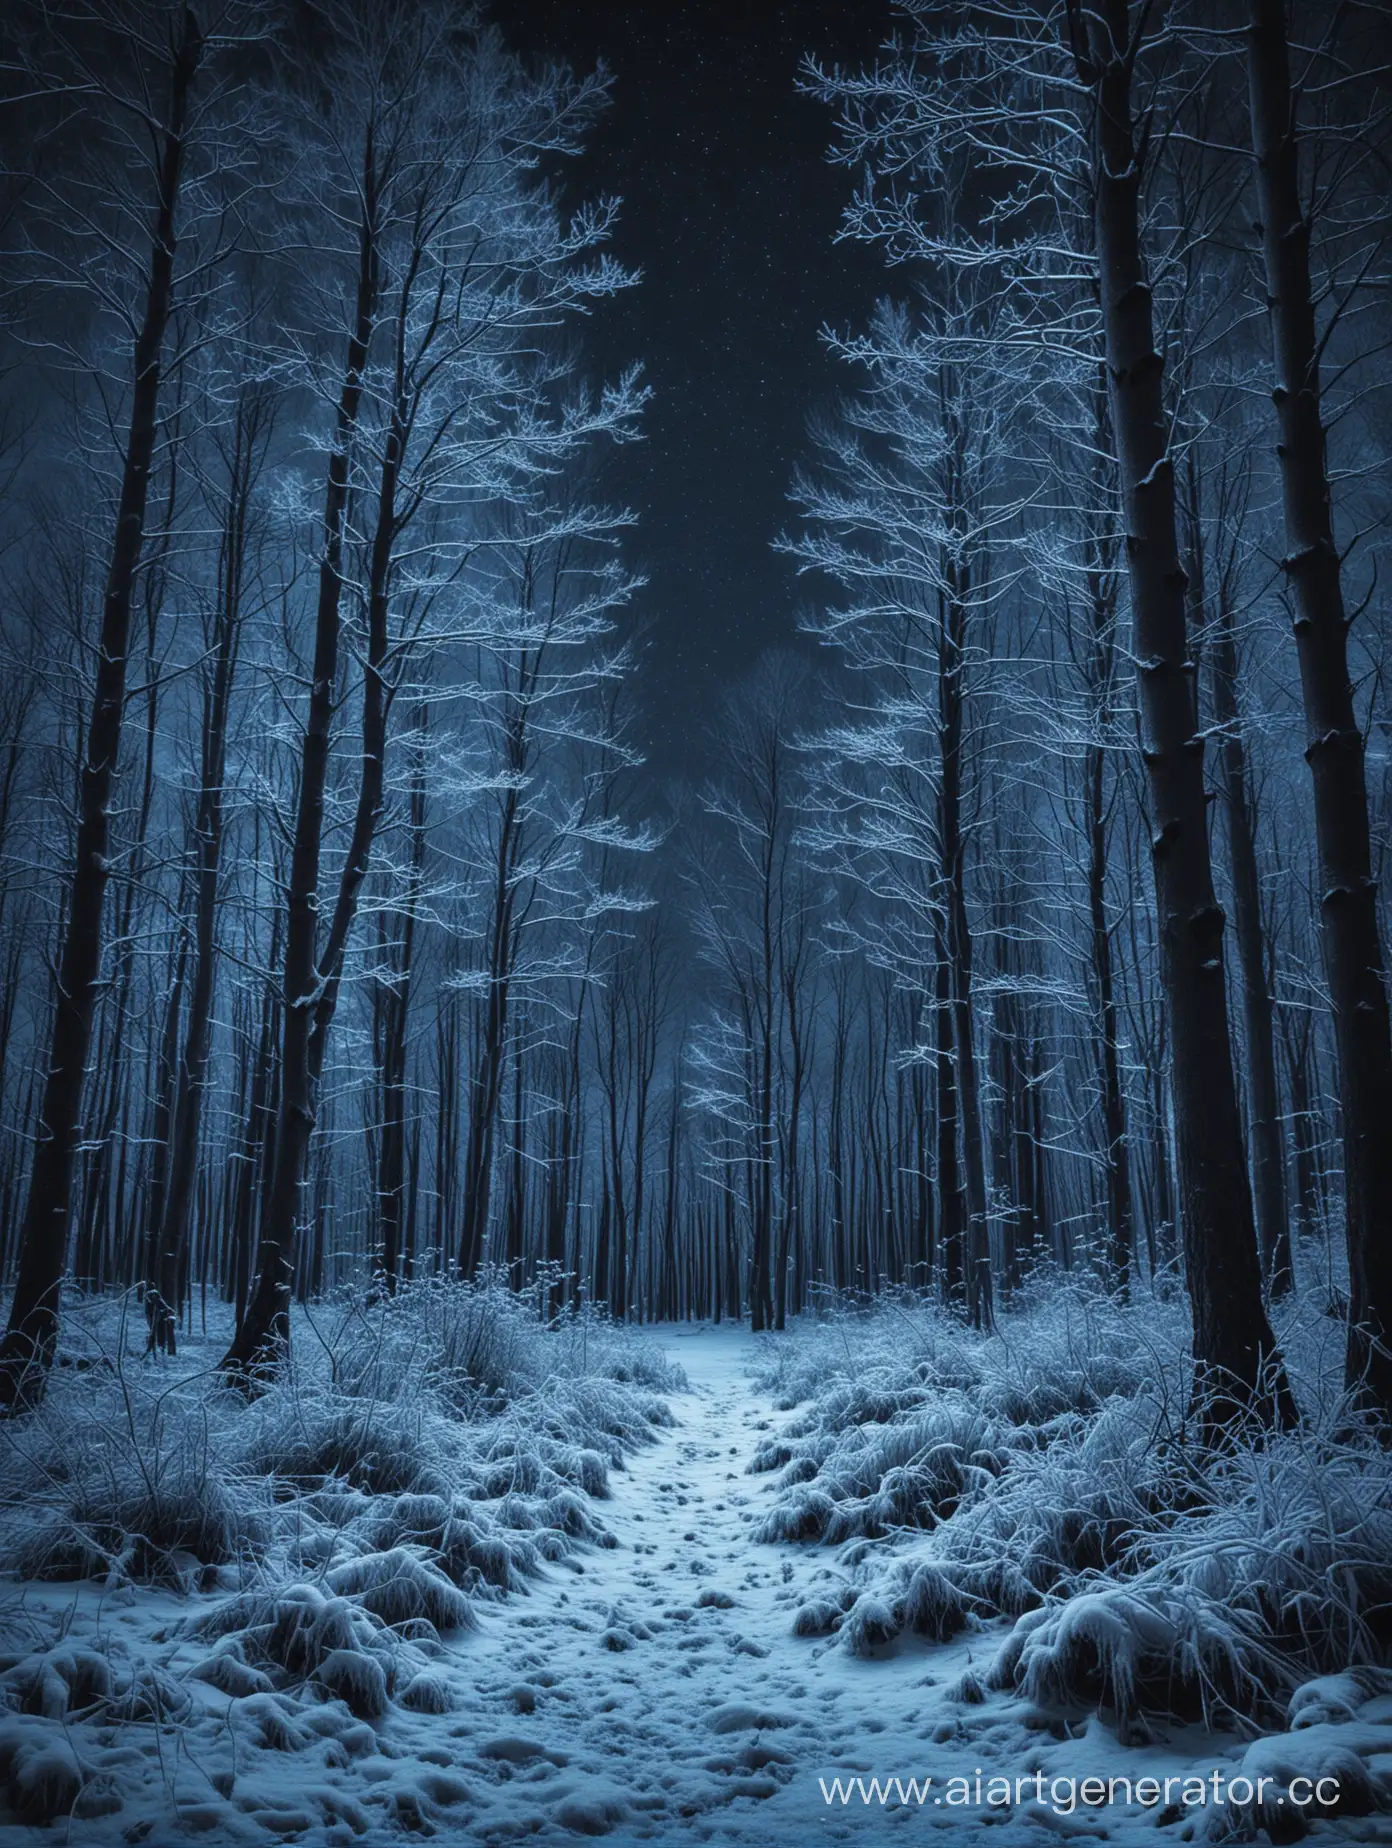 ночной зимний лес с голубым фильтром

